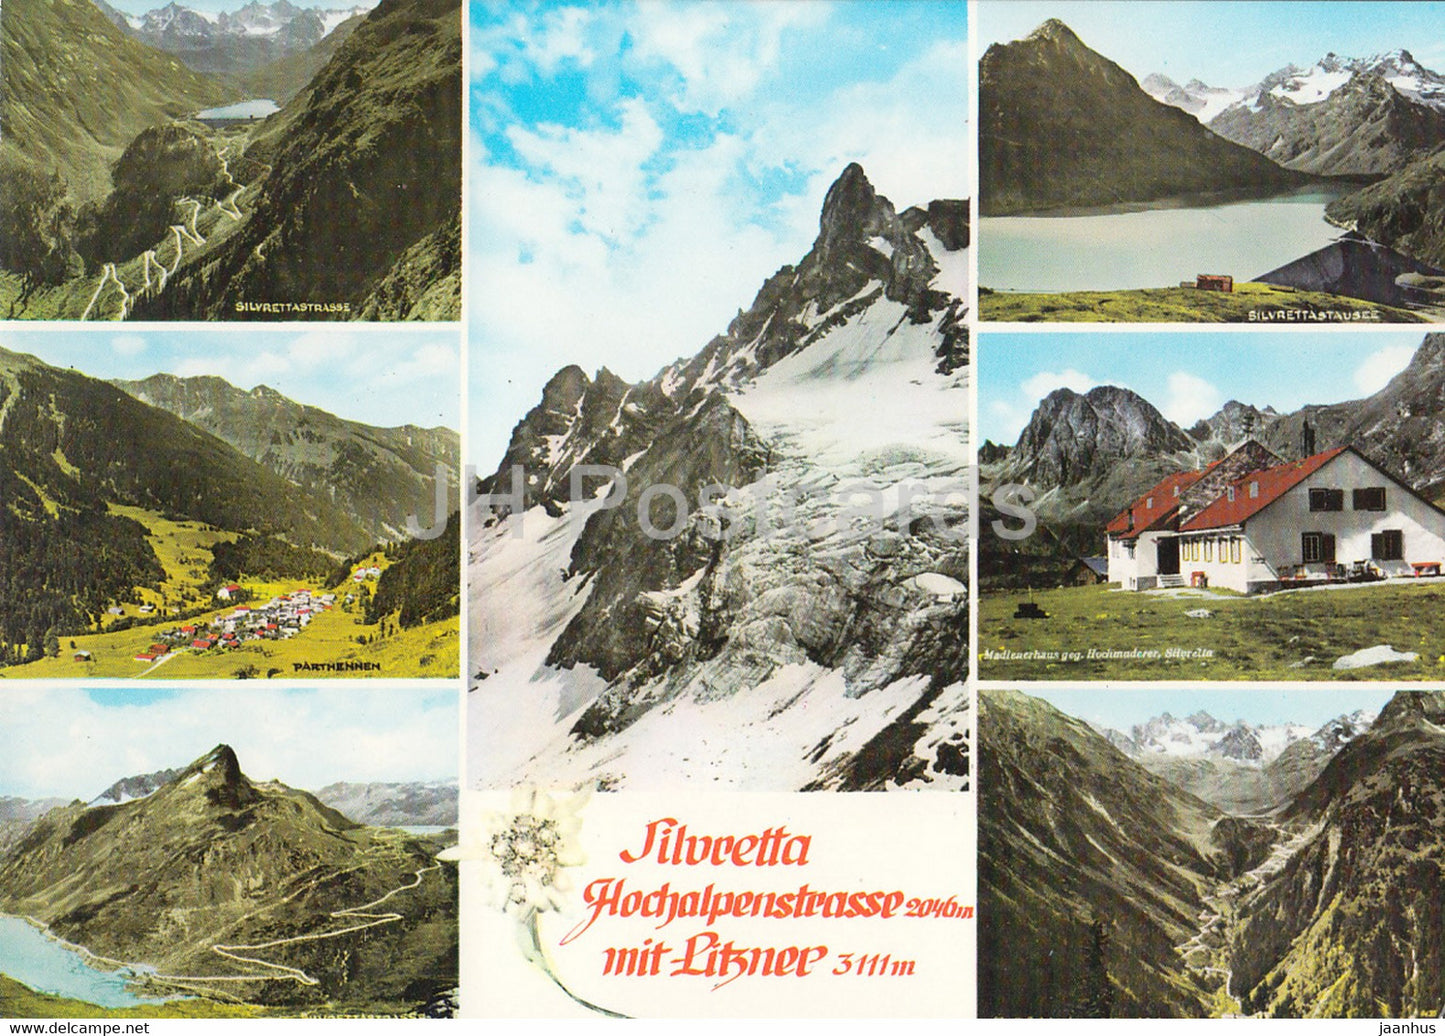 Silvretta - Hochalpenstrasse 2046 m - Litzner 3111 m -  Austria - used - JH Postcards